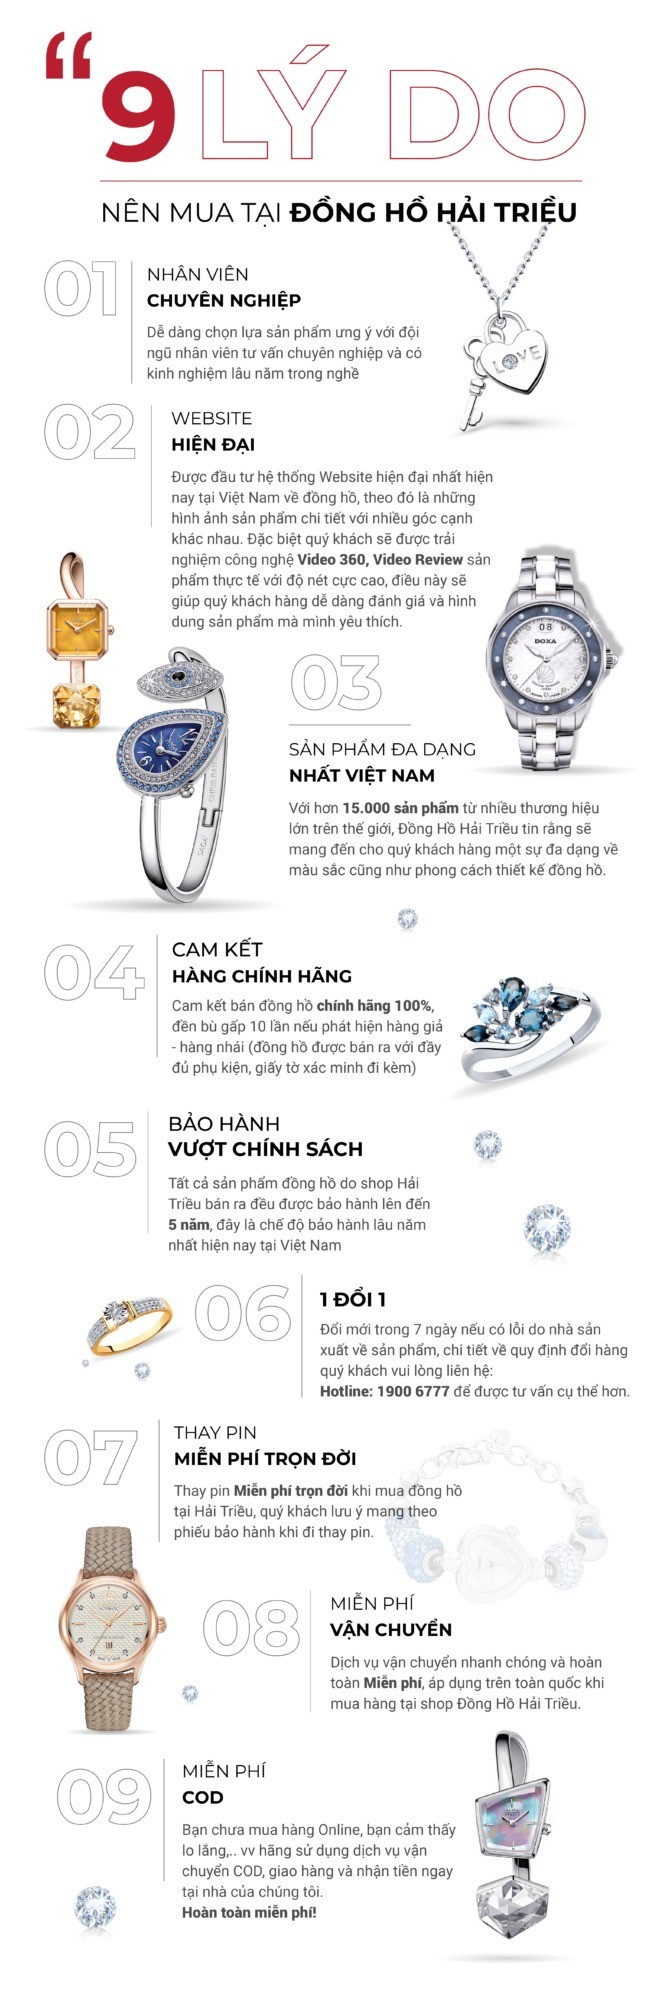 9 lý do bạn nên chọn mua đồng hồ ở Hải Triều